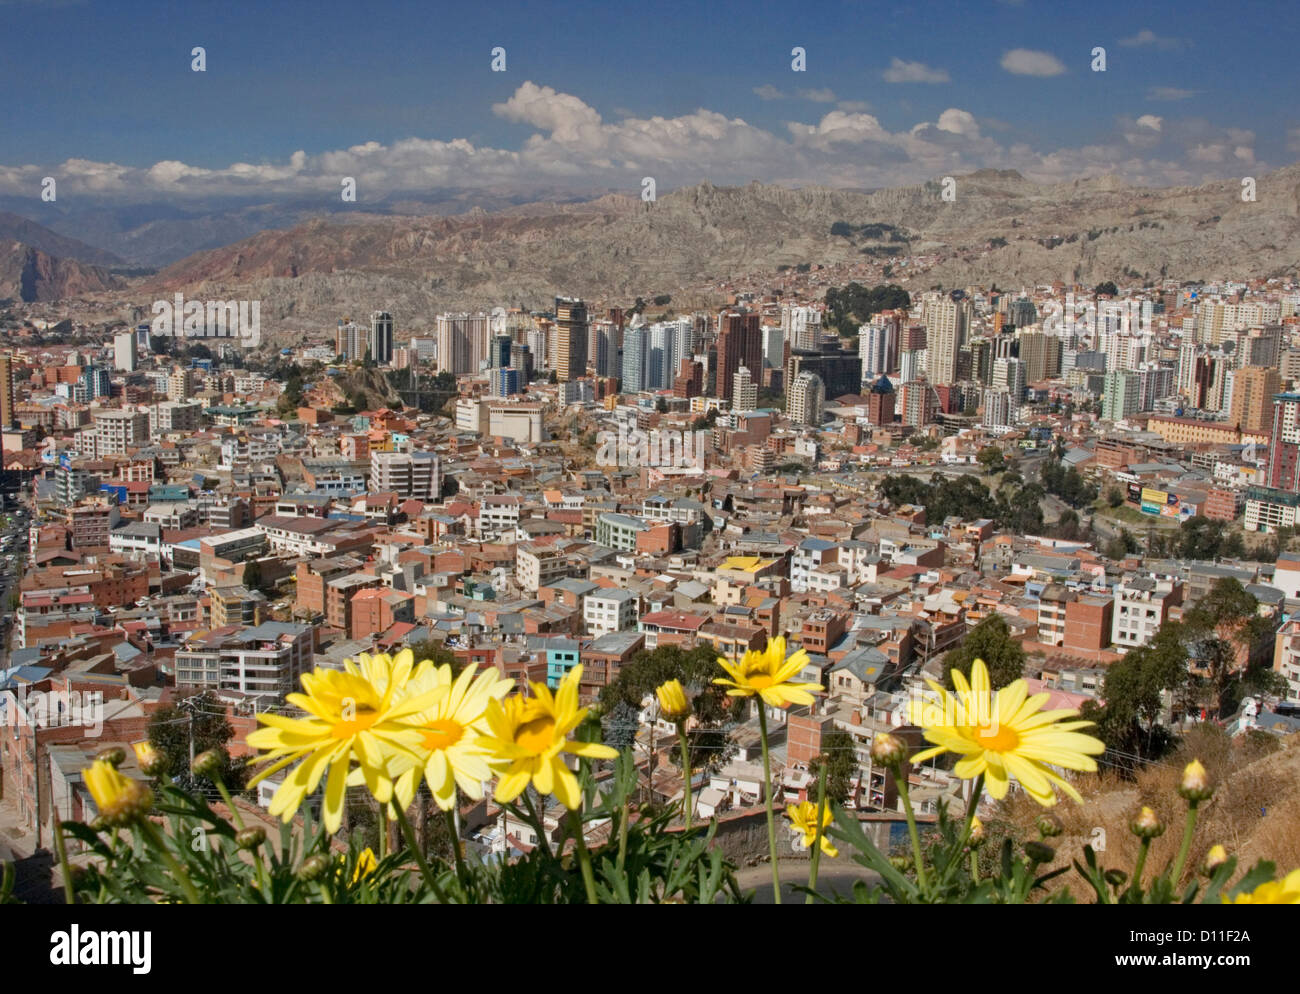 Vista della città boliviana di La Paz con grattacieli in una profonda valle circondata da montagne delle Ande e fiori in primo piano Foto Stock